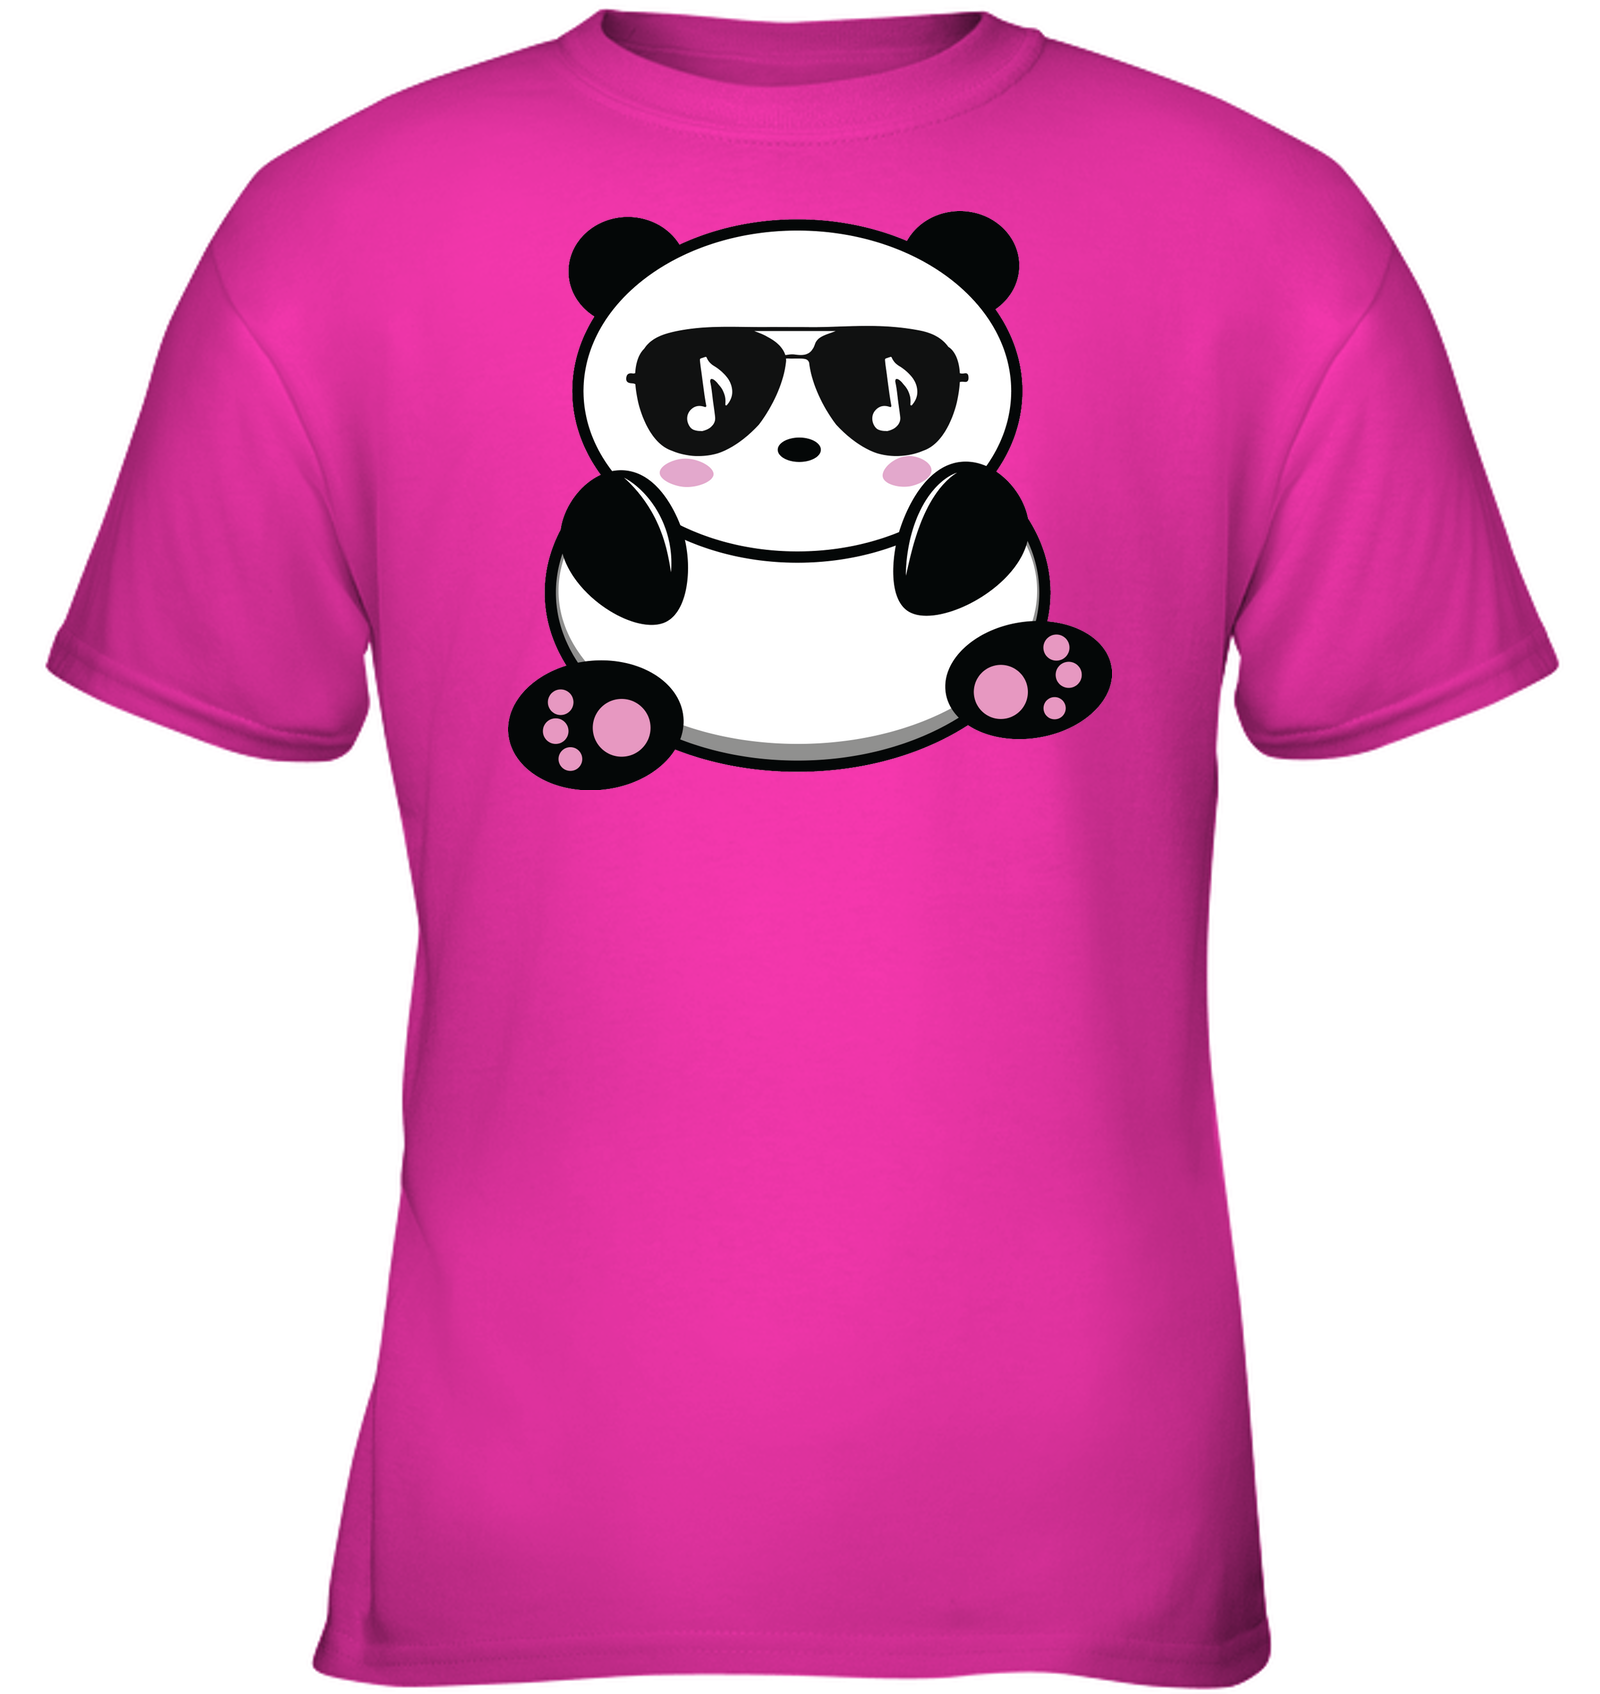 Cool Music Loving Panda feeling the beat - Gildan Youth Short Sleeve T-Shirt